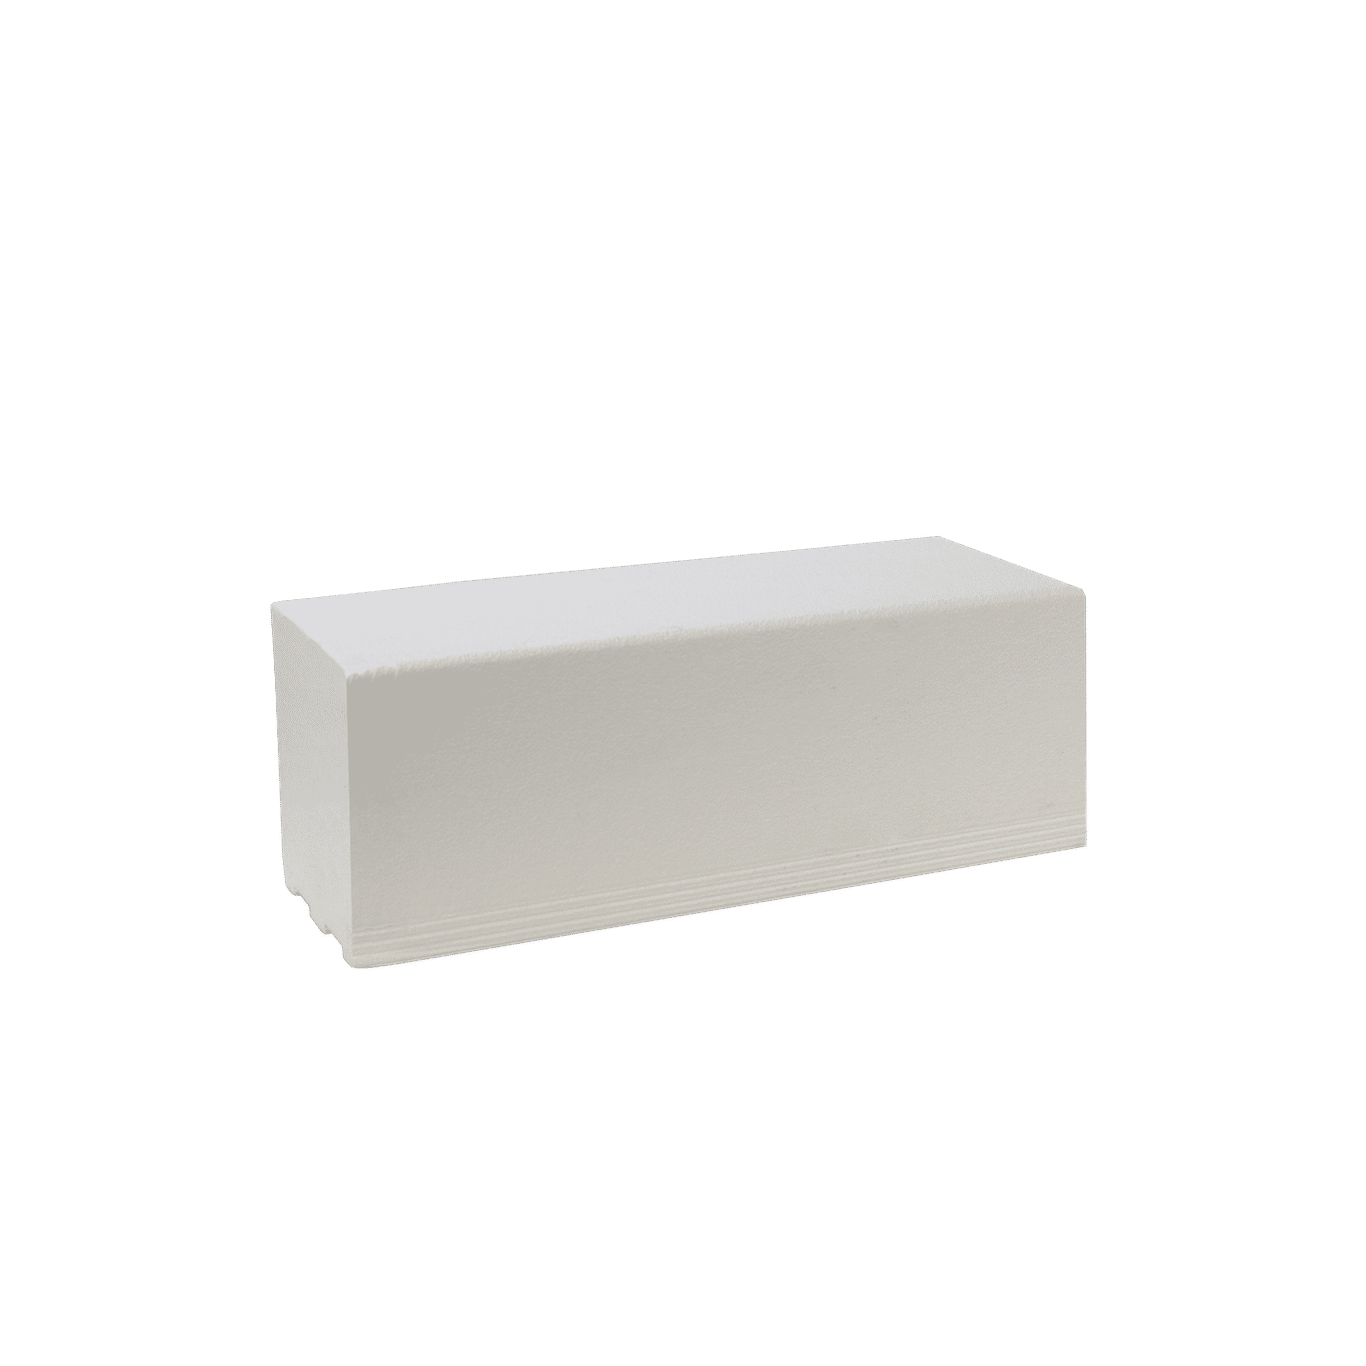 Pro GEN II Solid Polystyrene Shower Curb - 3' Long